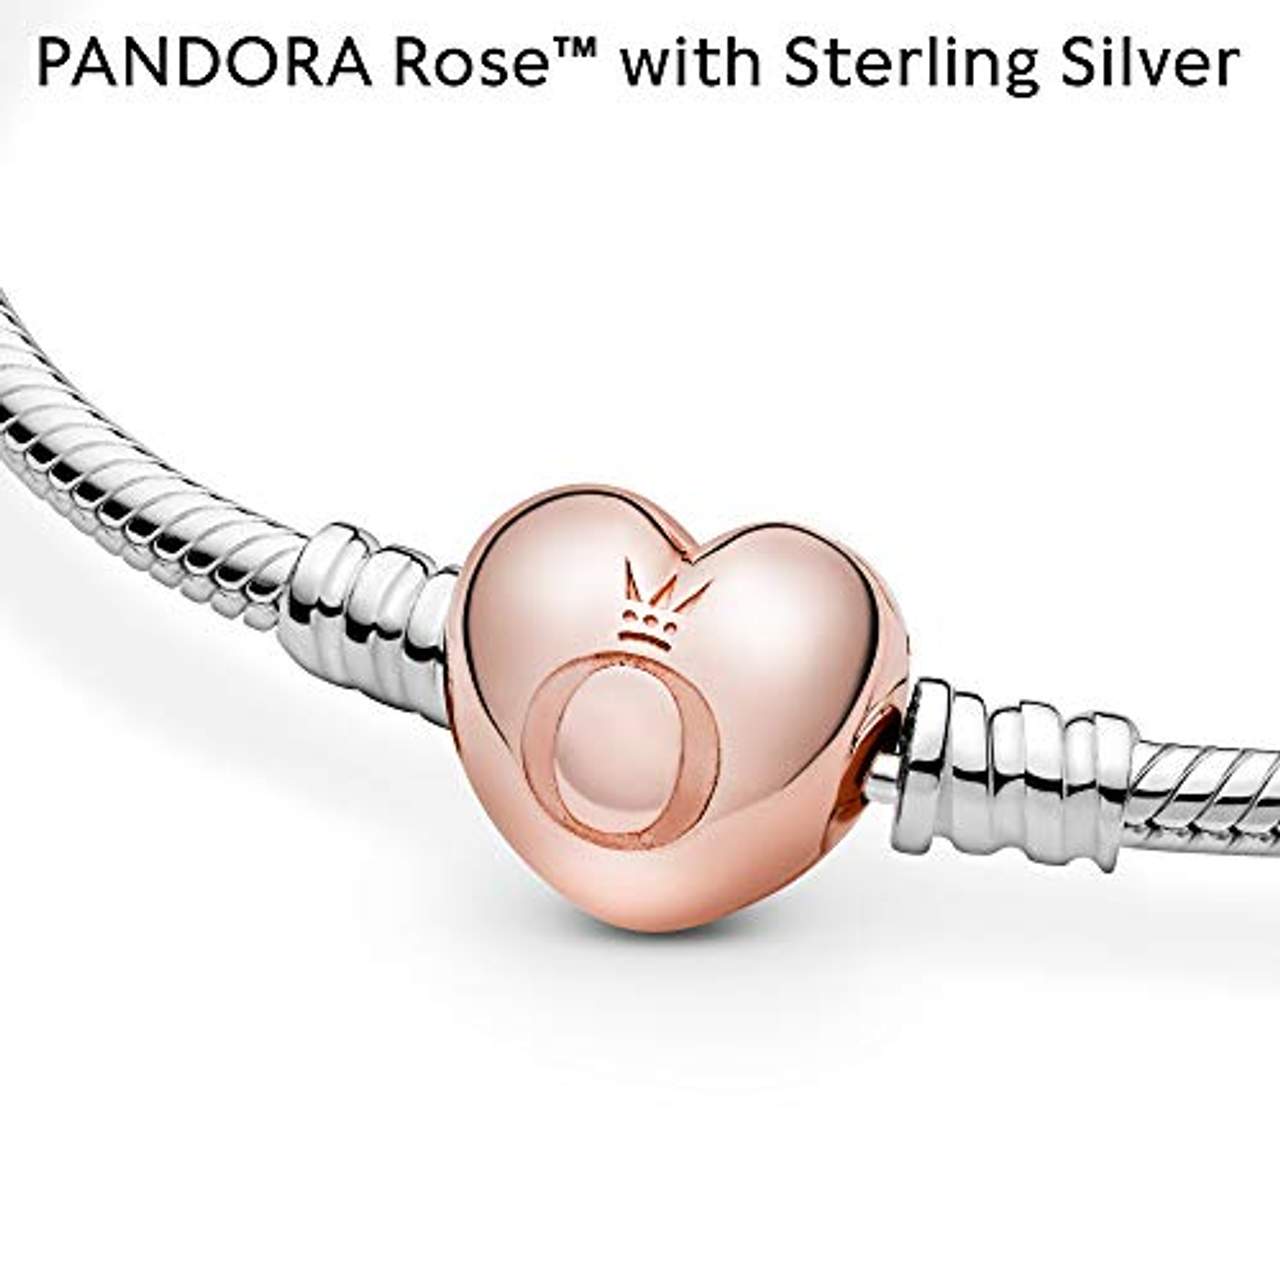 Pandora Moments Schlangen-Gliederarmband mit Herz-Verschluss